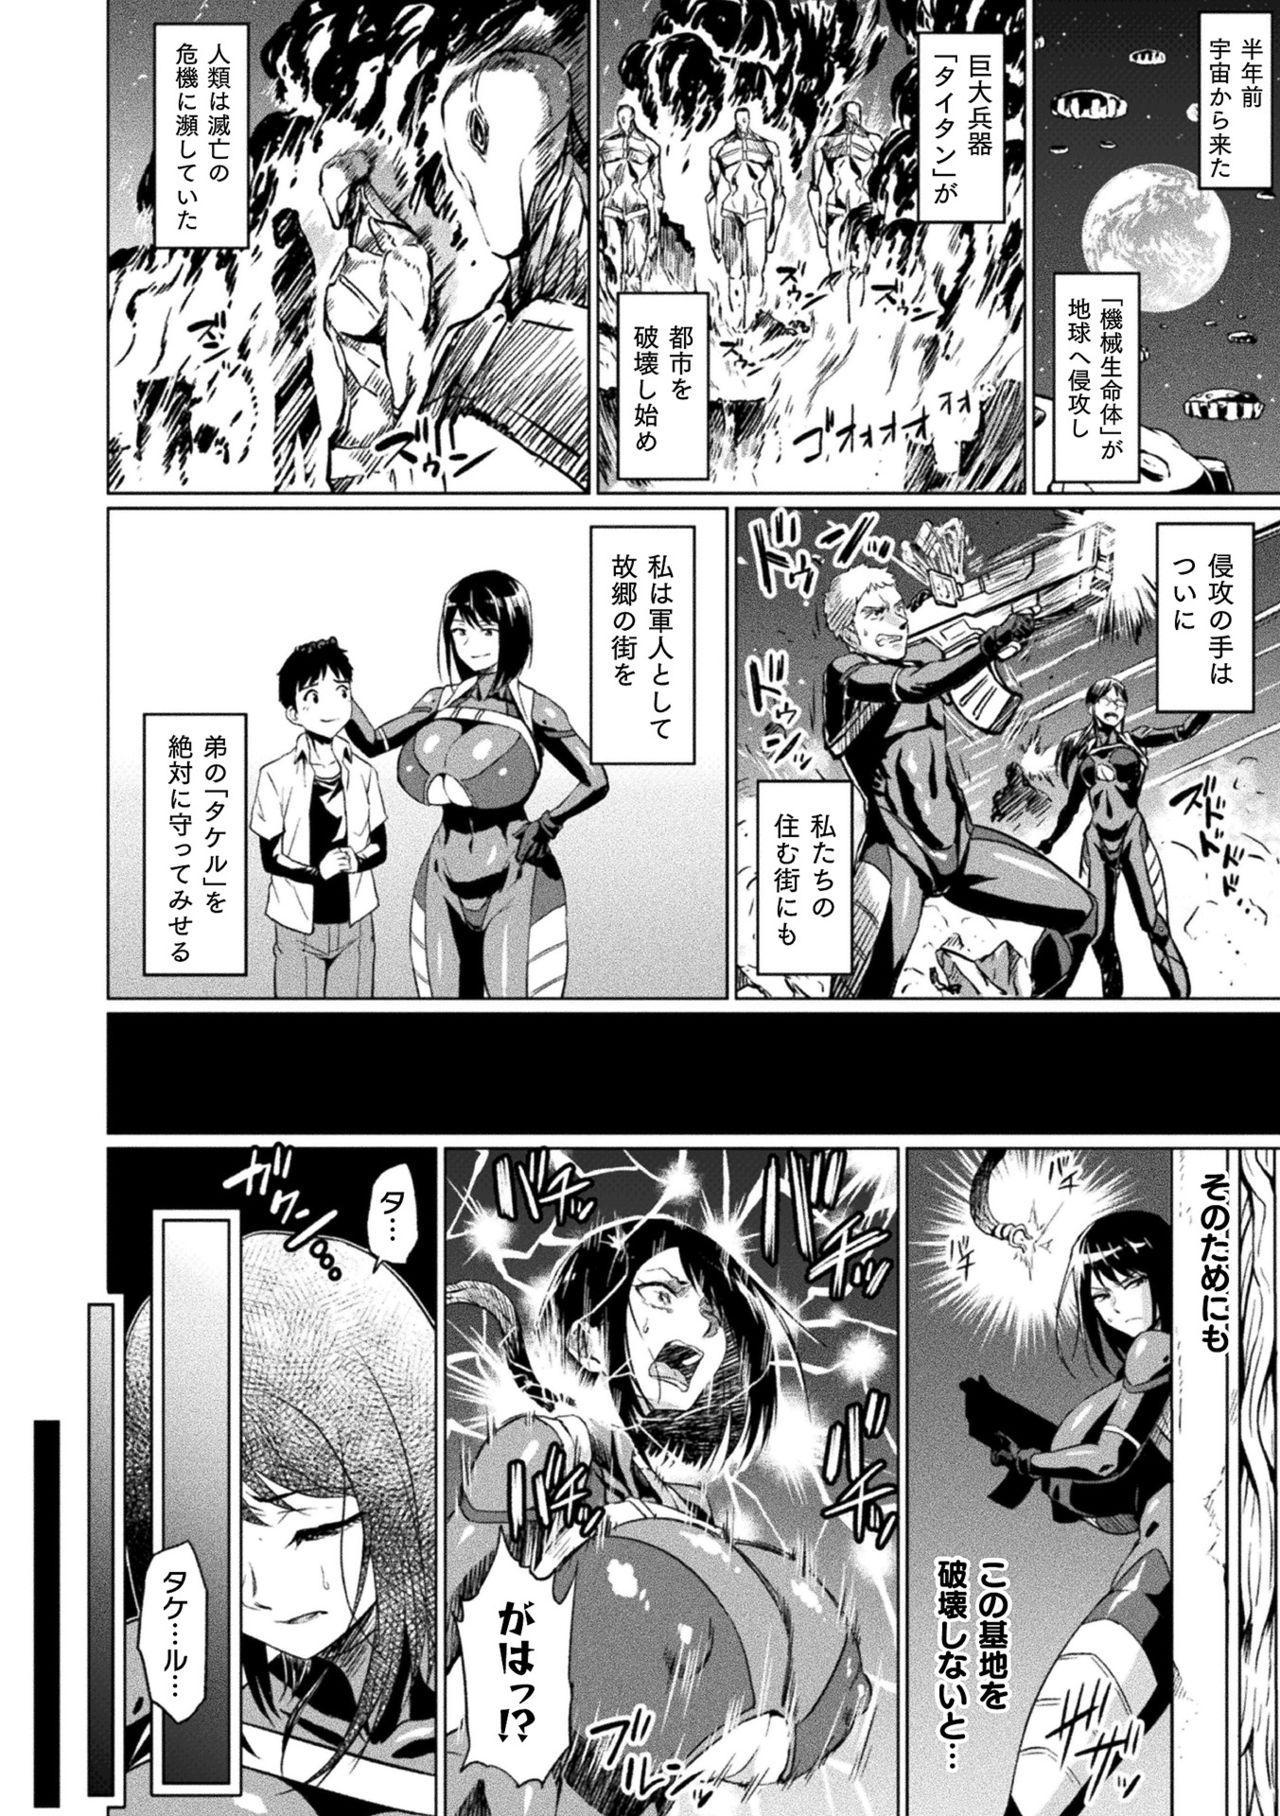 Crazy 2D Comic Magazine - Seitai Unit Kikaikan Vol.1 Eurobabe - Page 4